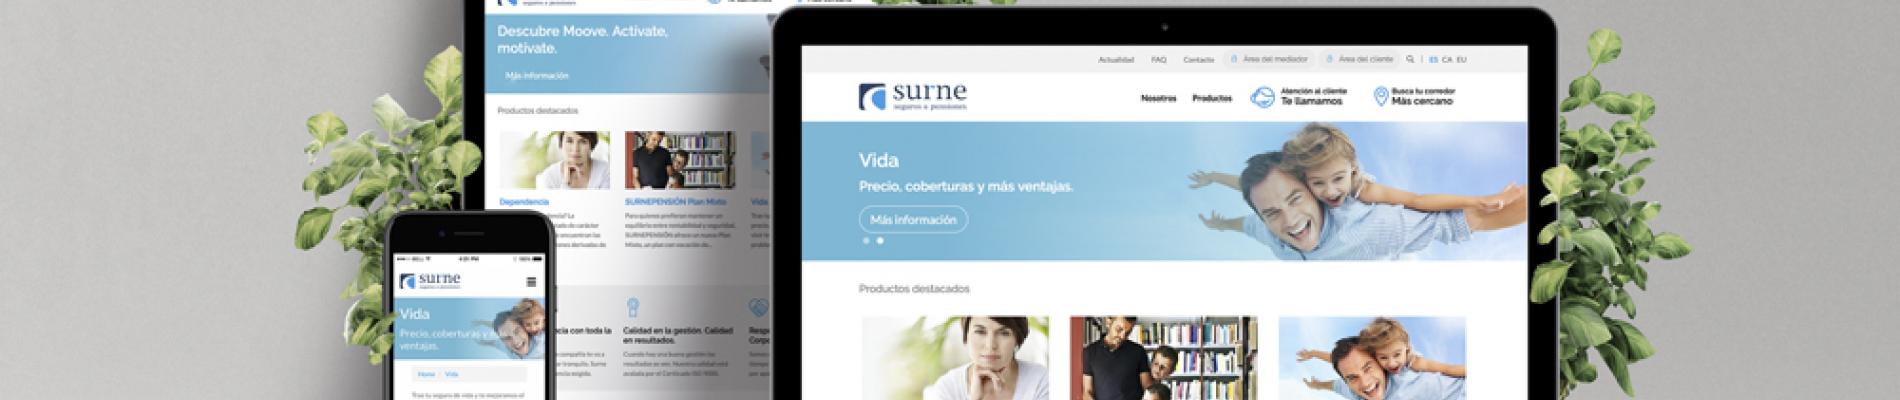 La nova web de Surne aconsegueix el primer lloc